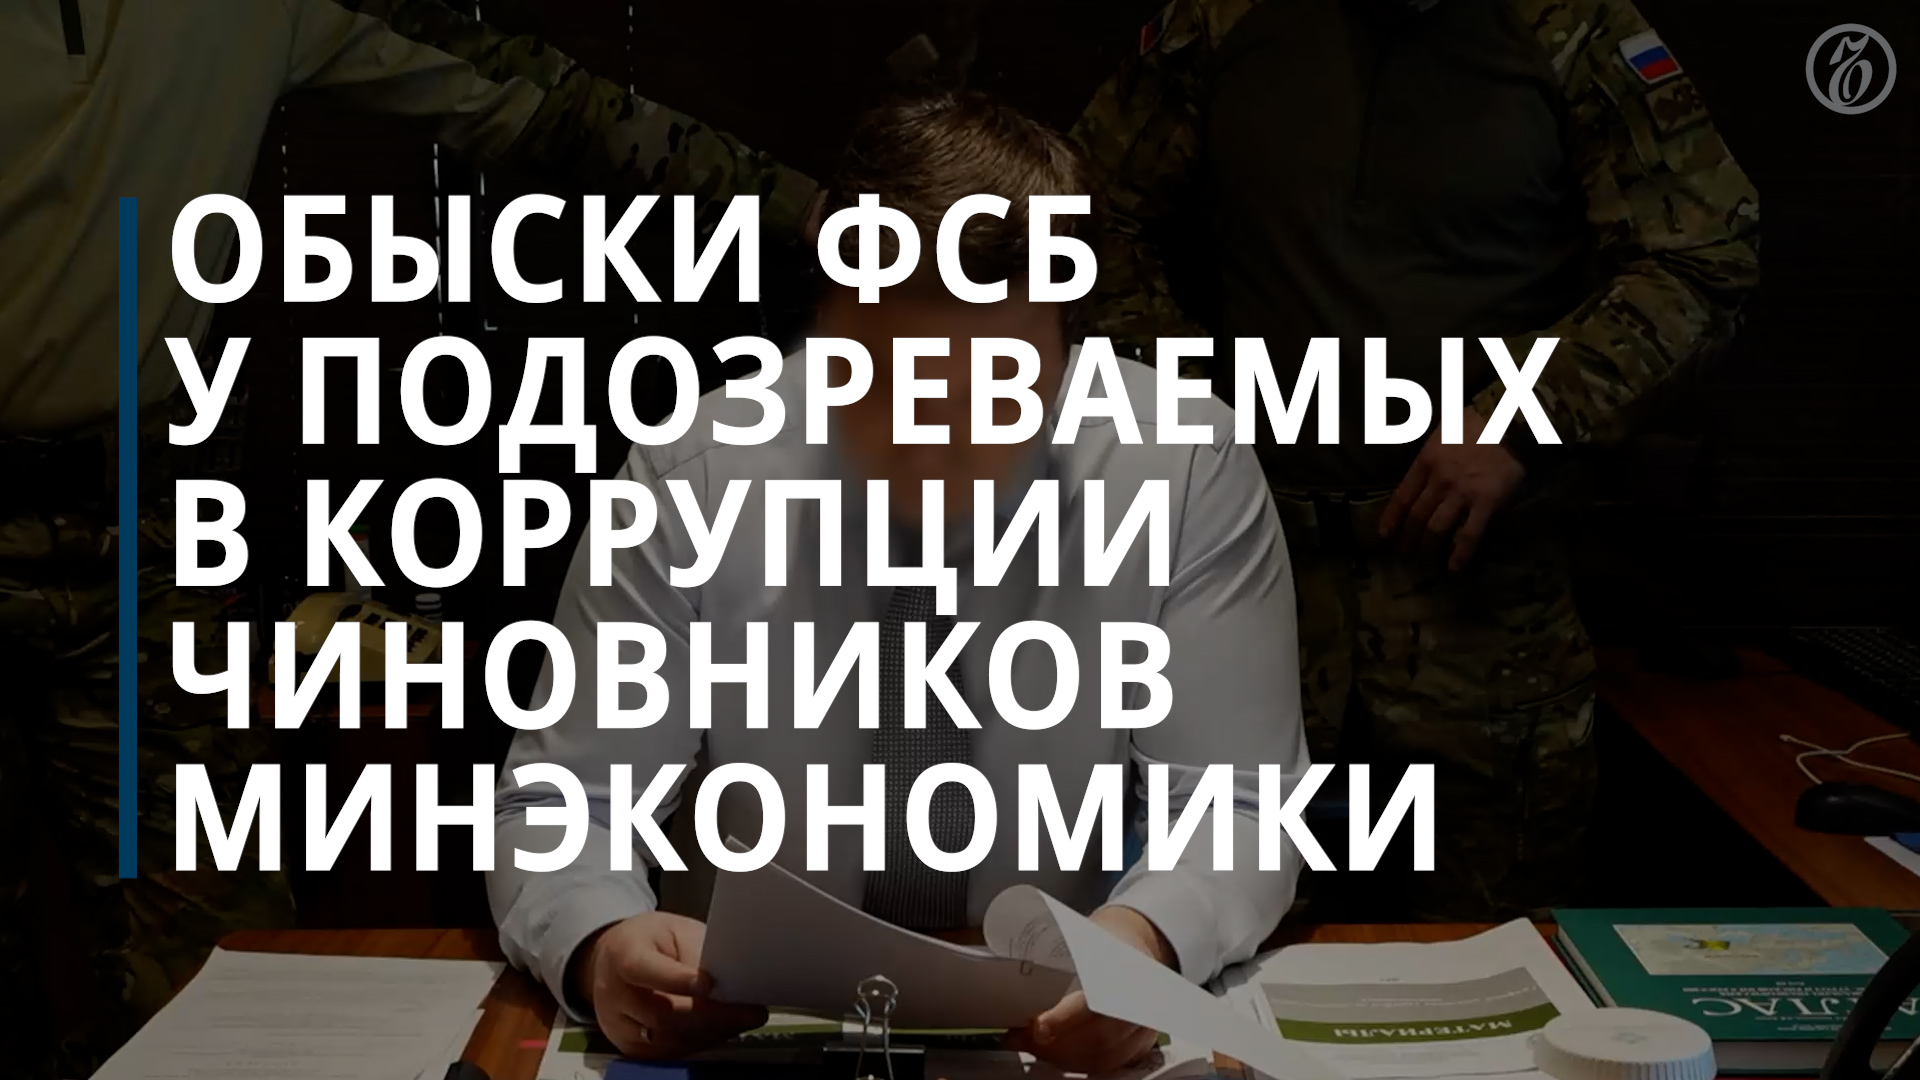 ФСБ сообщила о раскрытии группировки из числа руководителей Минэкономики